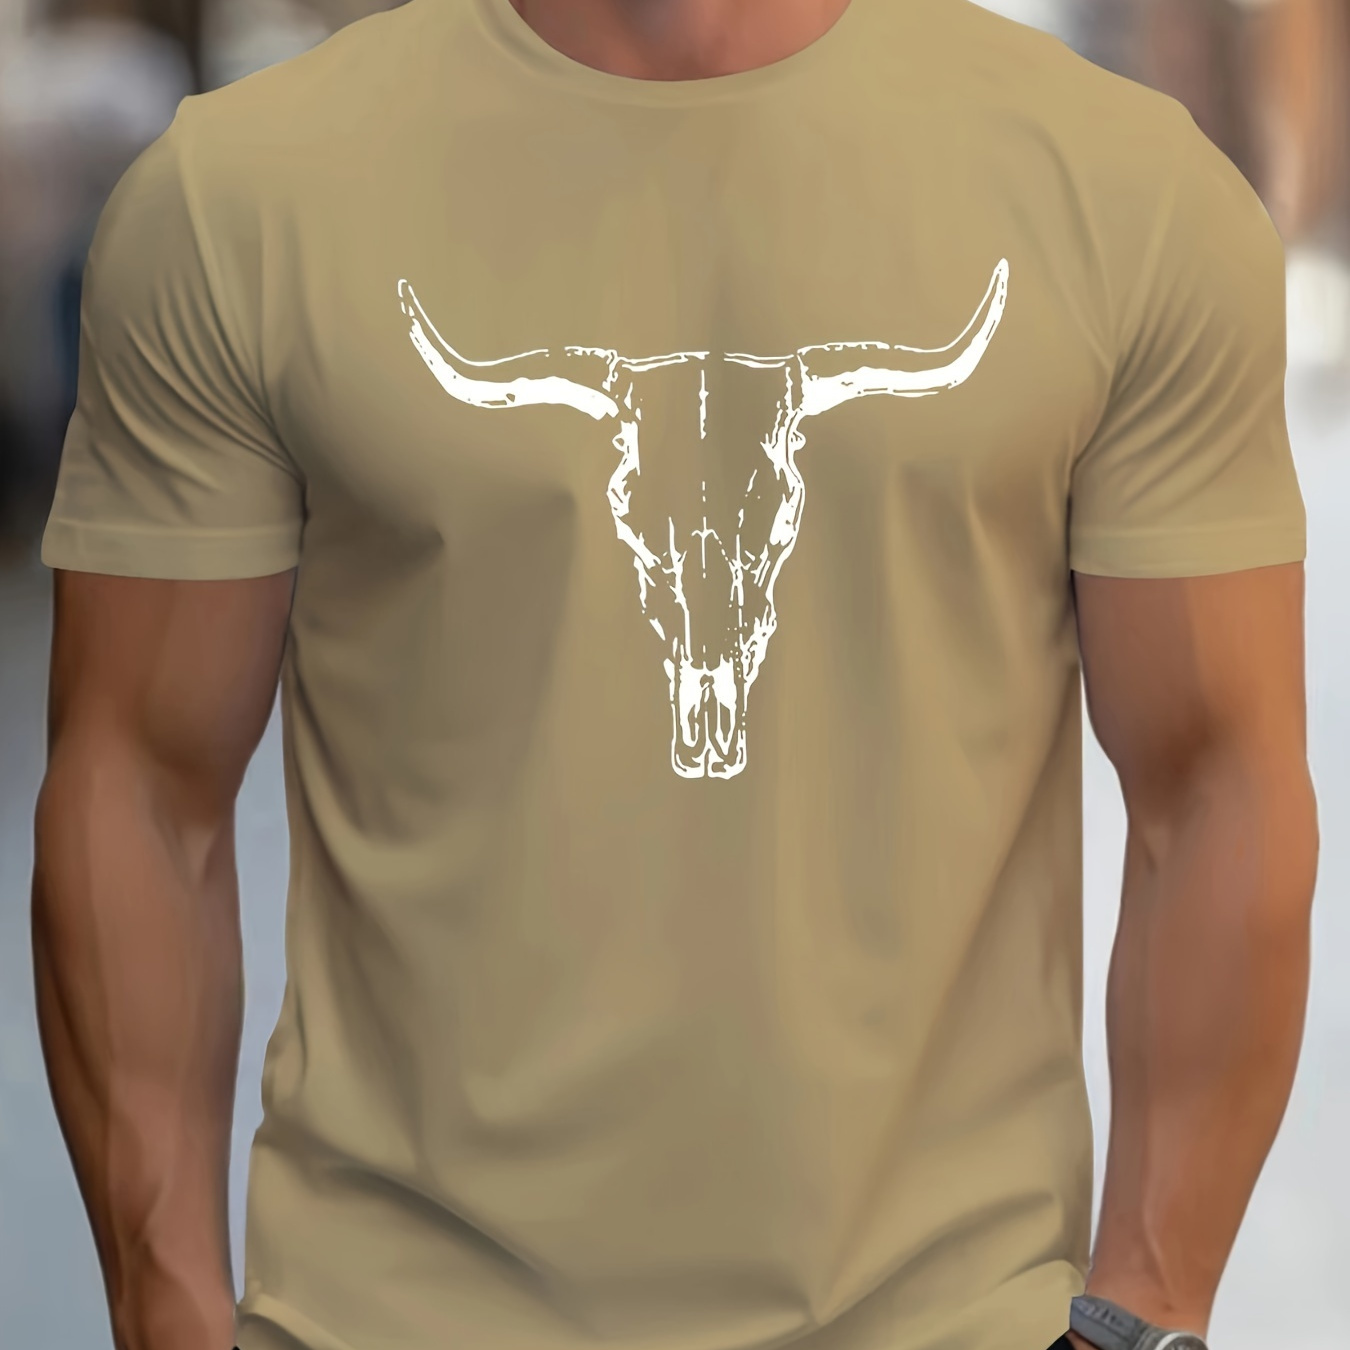 

Bull Skull Print T Shirt, Tees For Men, Casual Short Sleeve T-shirt For Summer